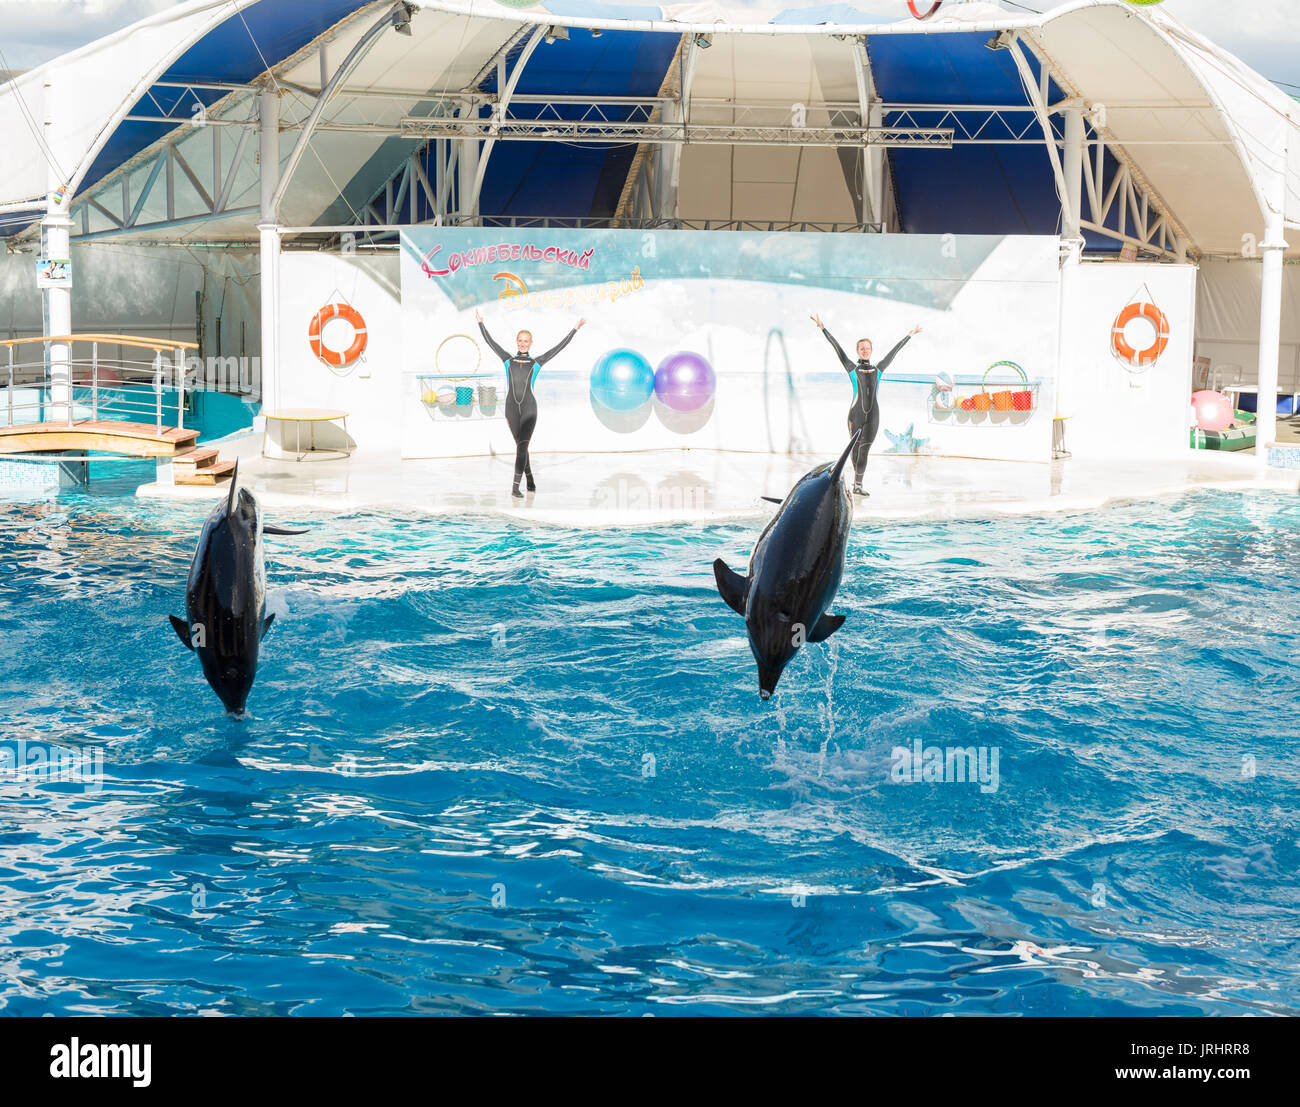 KOKTEBEL, RUSSIE - 20 septembre 2013 - spectacle de dauphins. Des dauphins effectuant cascades dans la piscine Banque D'Images